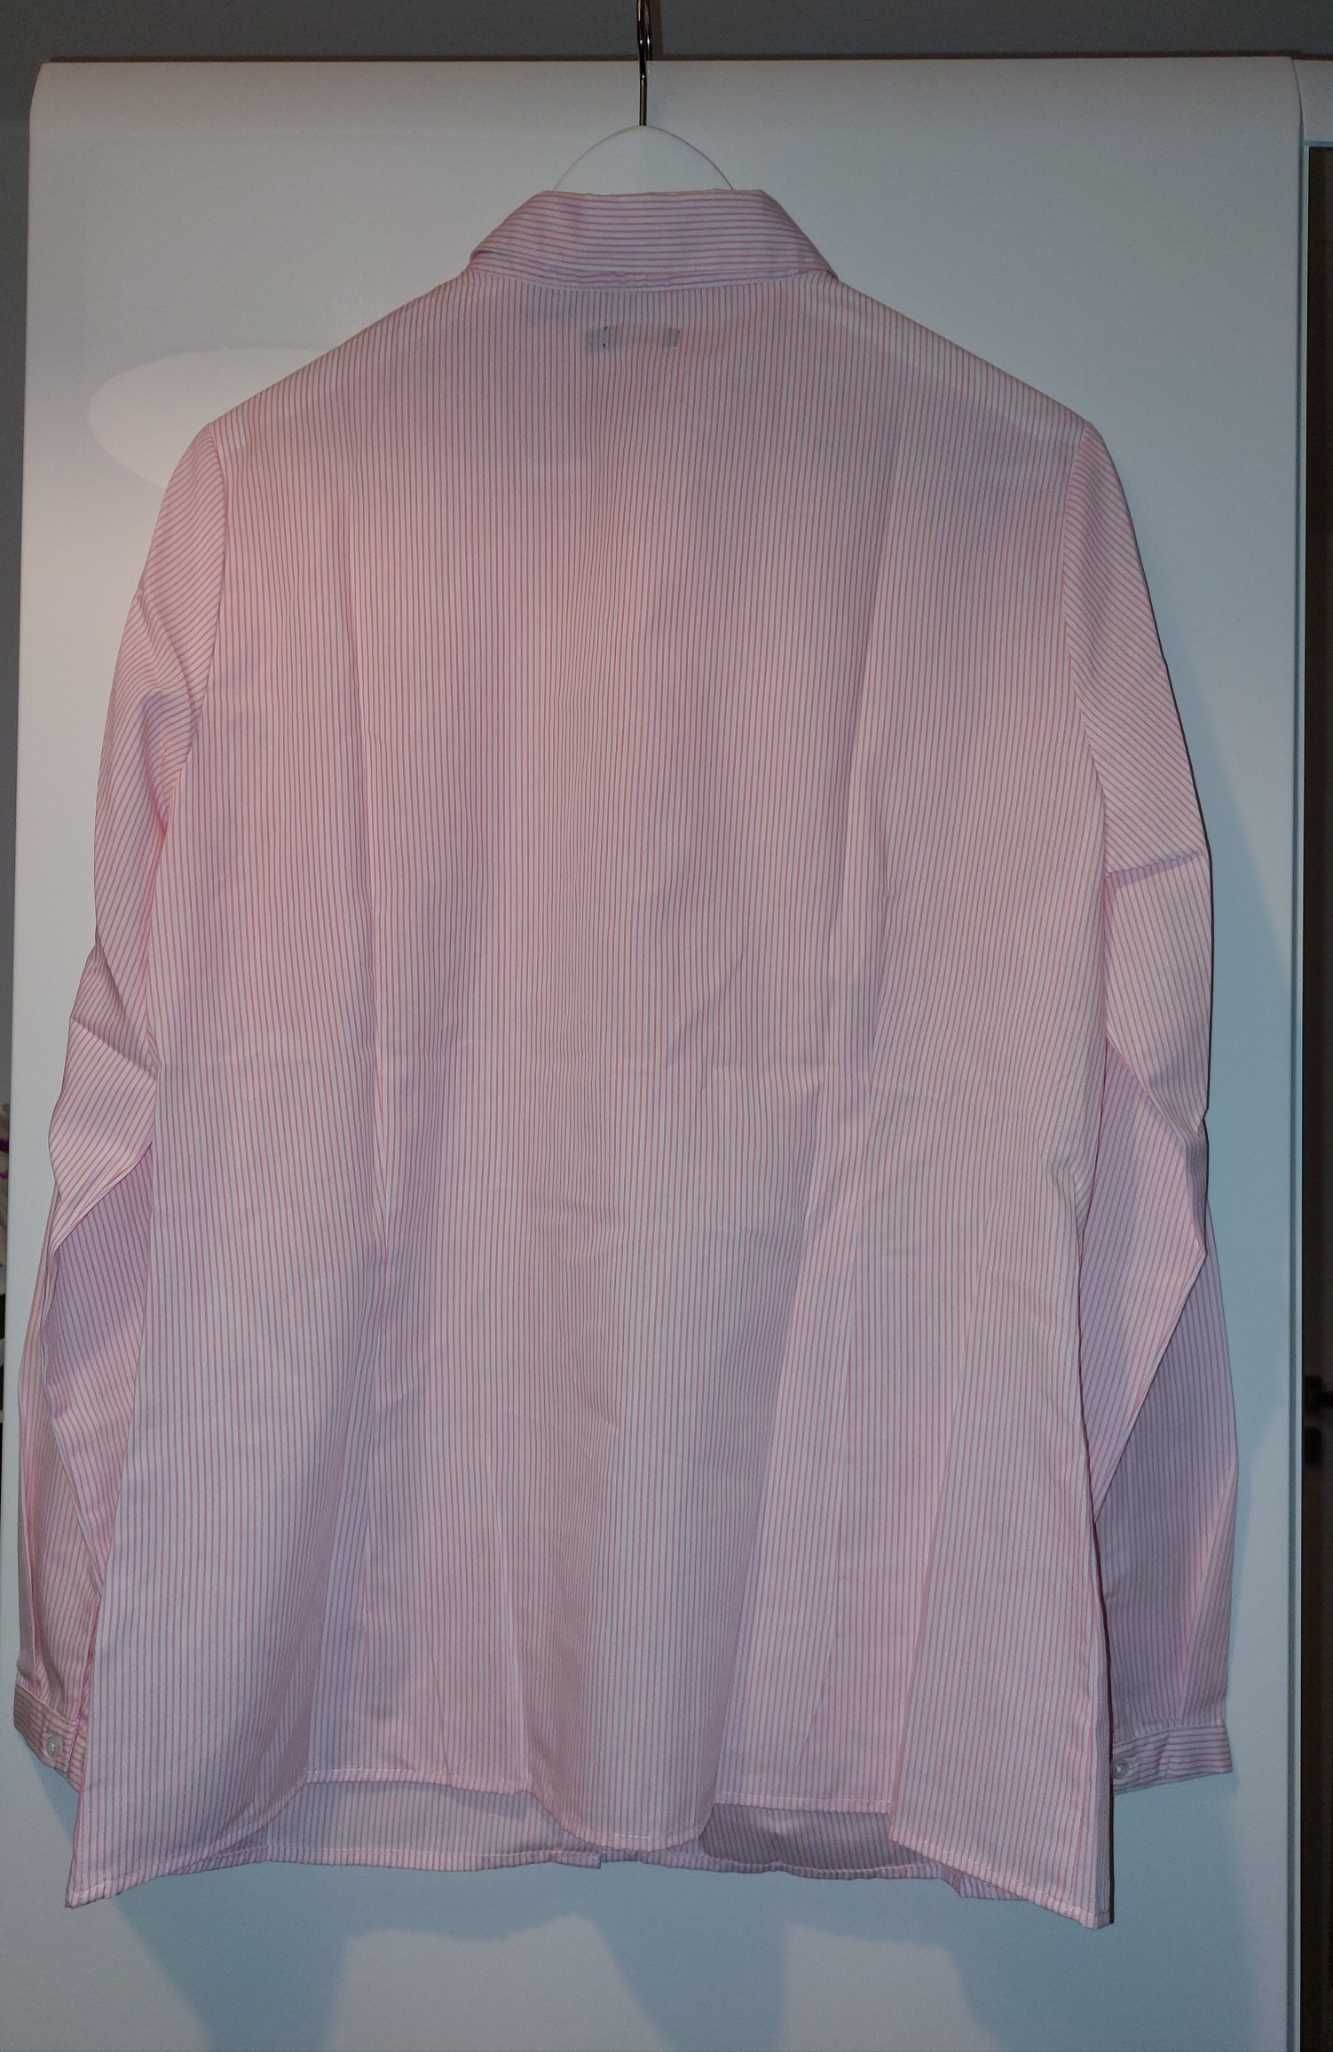 Koszula biała różowa paski prążki 42/XL